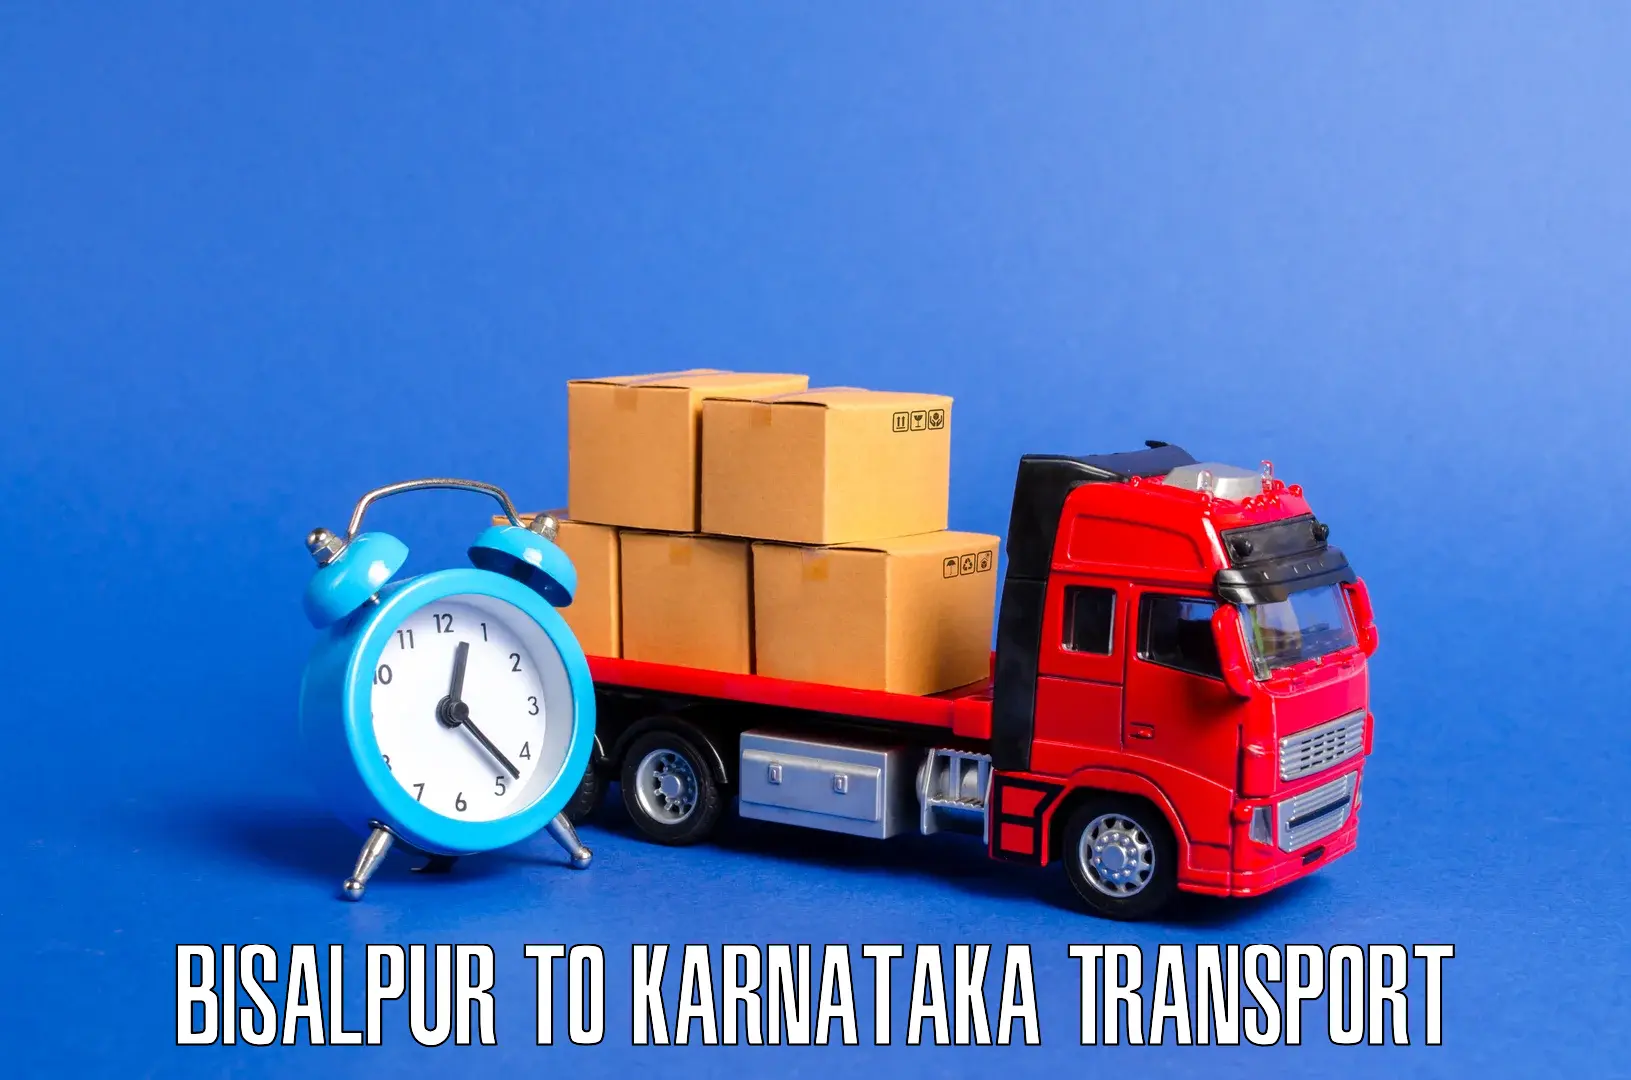 Commercial transport service Bisalpur to Jagalur